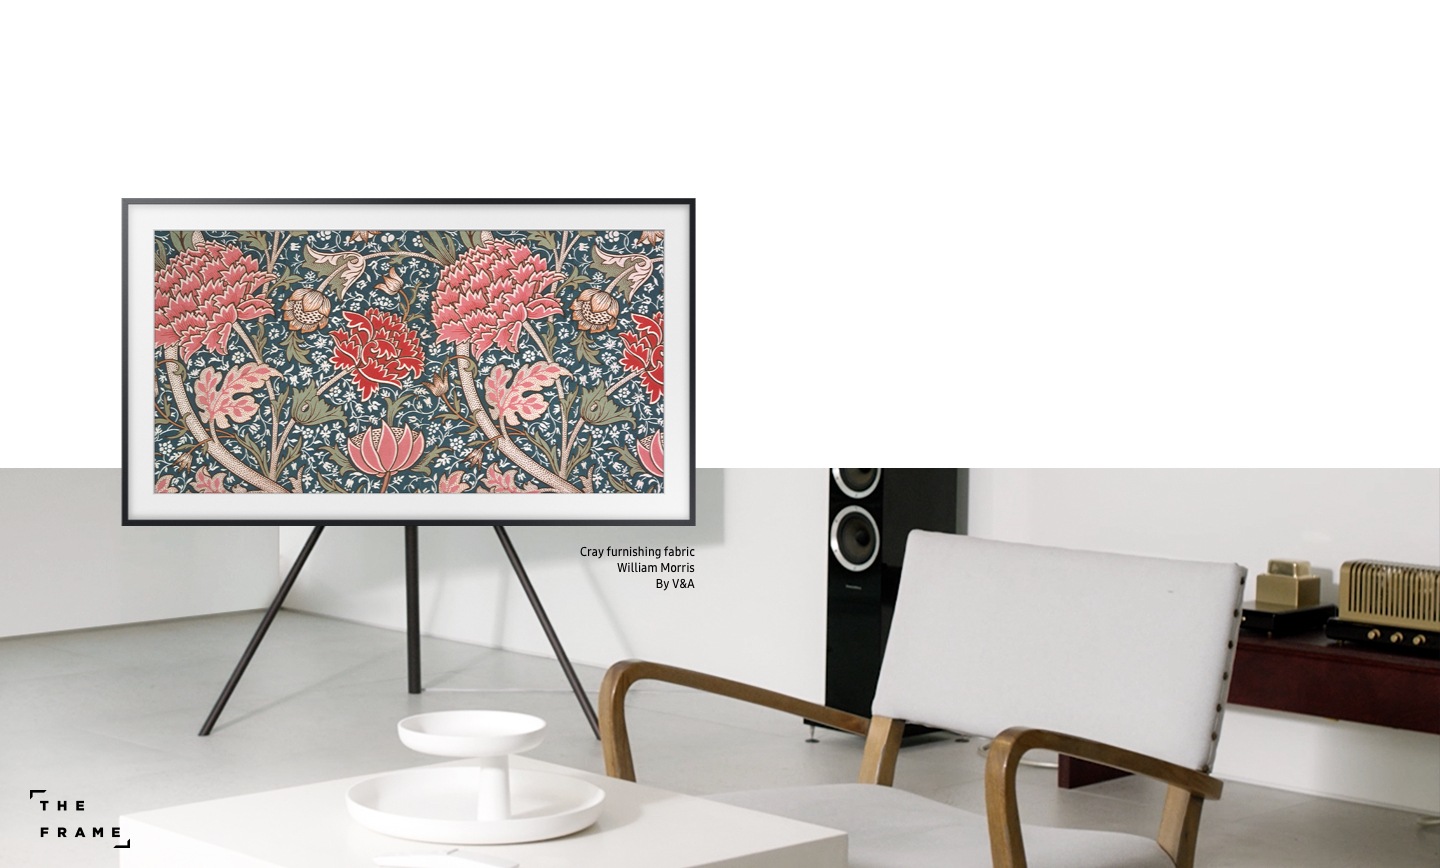 A televisão The Frame da Samsung exibe a obra de arte “Cray furnishing fabric” de William Morris, V&A. A televisão Frame decora todos os espaços, e pode ter várias funções onde for colocada.